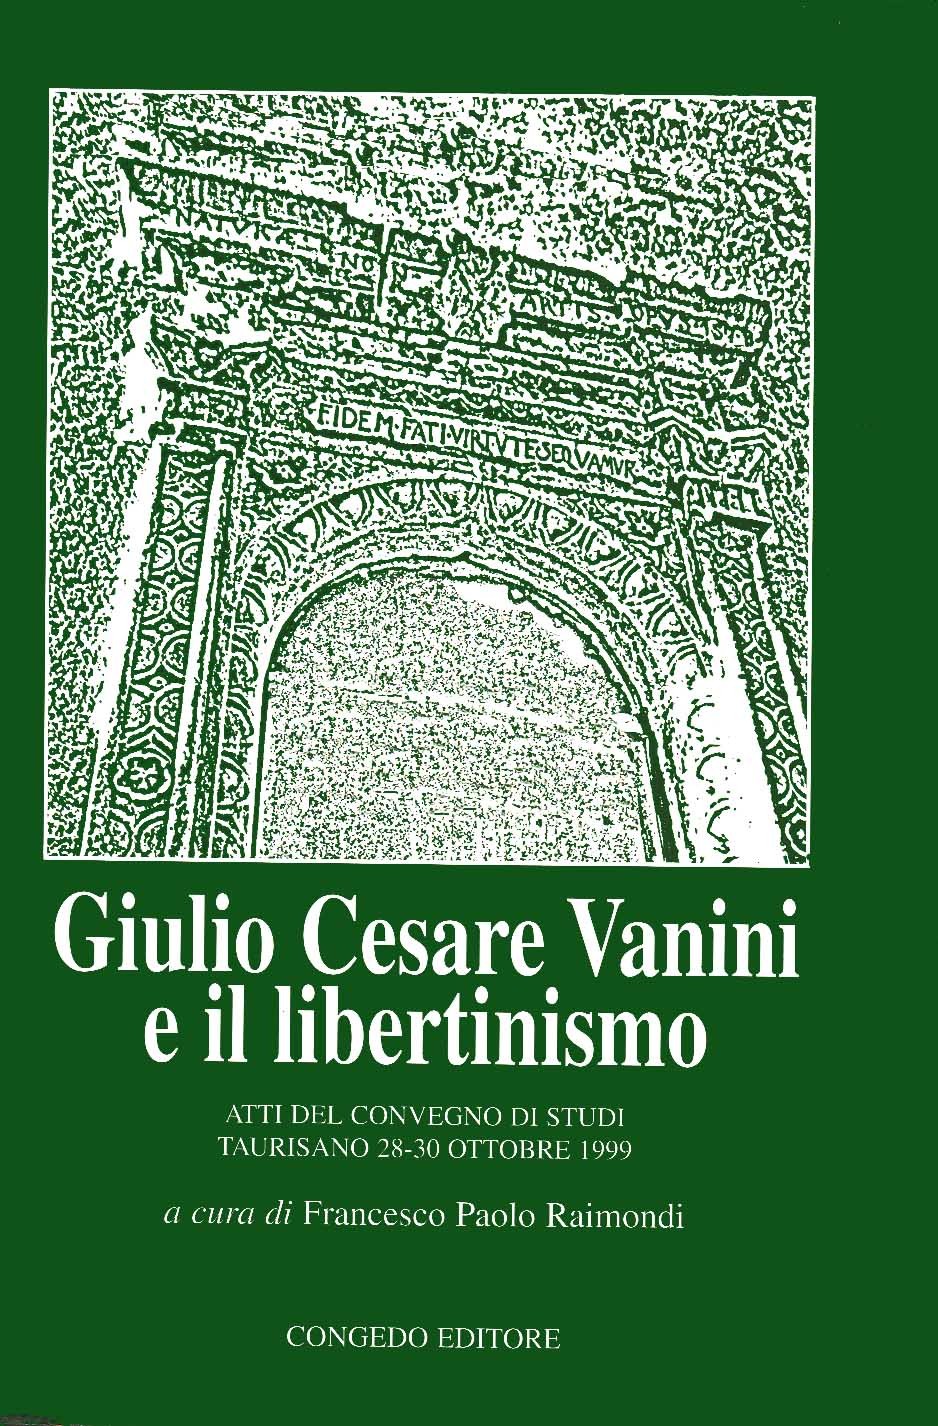 Giulio Cesare Vanini e il libertinismo